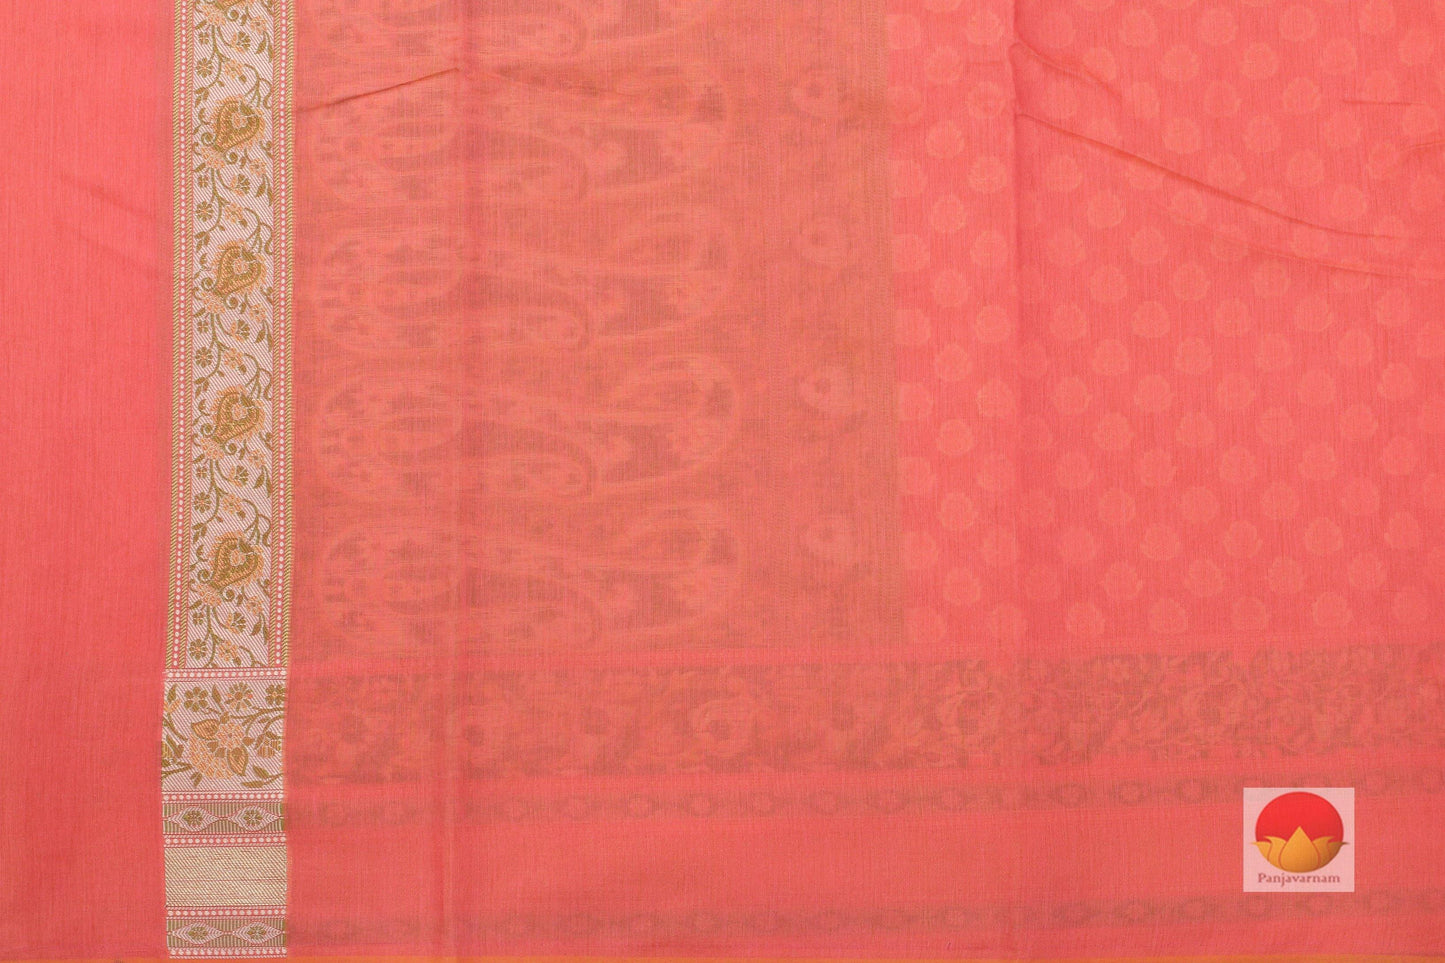 Lite Weight Banarasi Silk Cotton Saree - PSC 44 - Silk Cotton - Panjavarnam